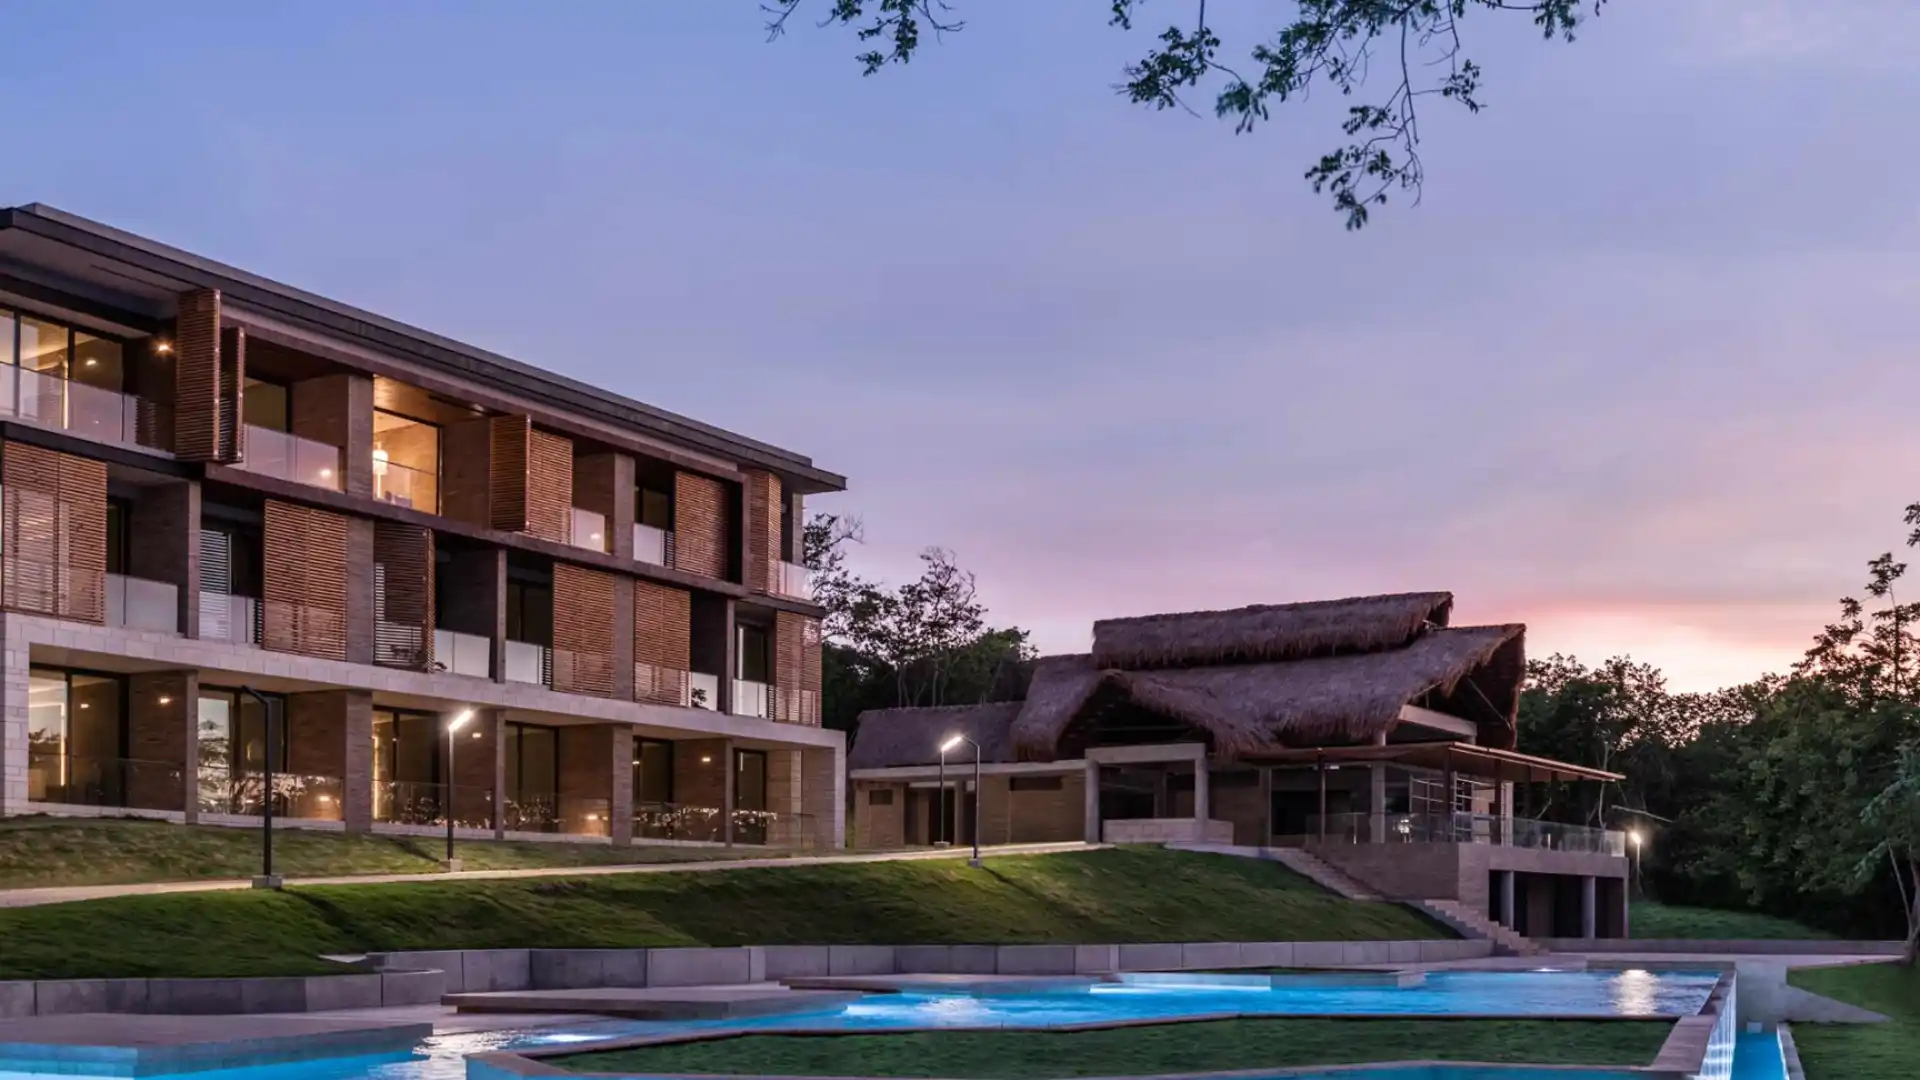 Sofitel Barú Calablanca Beach Resort: así es el mejor hotel de Colombia